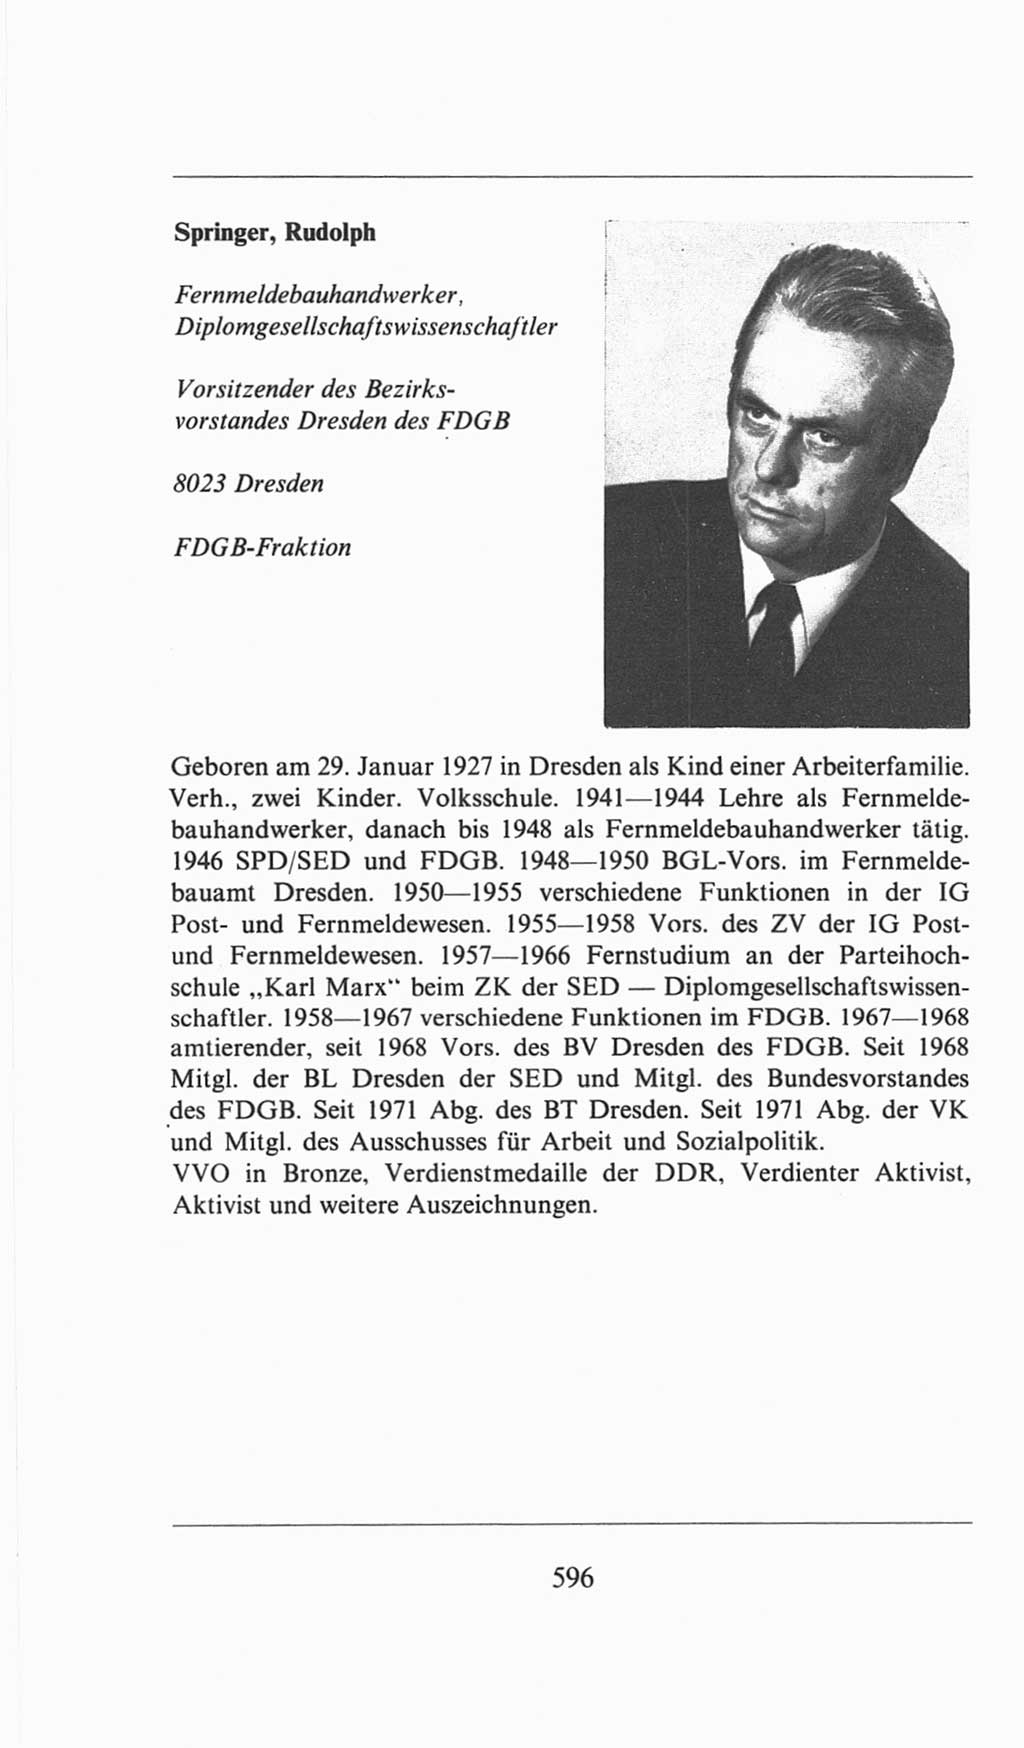 Volkskammer (VK) der Deutschen Demokratischen Republik (DDR), 6. Wahlperiode 1971-1976, Seite 596 (VK. DDR 6. WP. 1971-1976, S. 596)